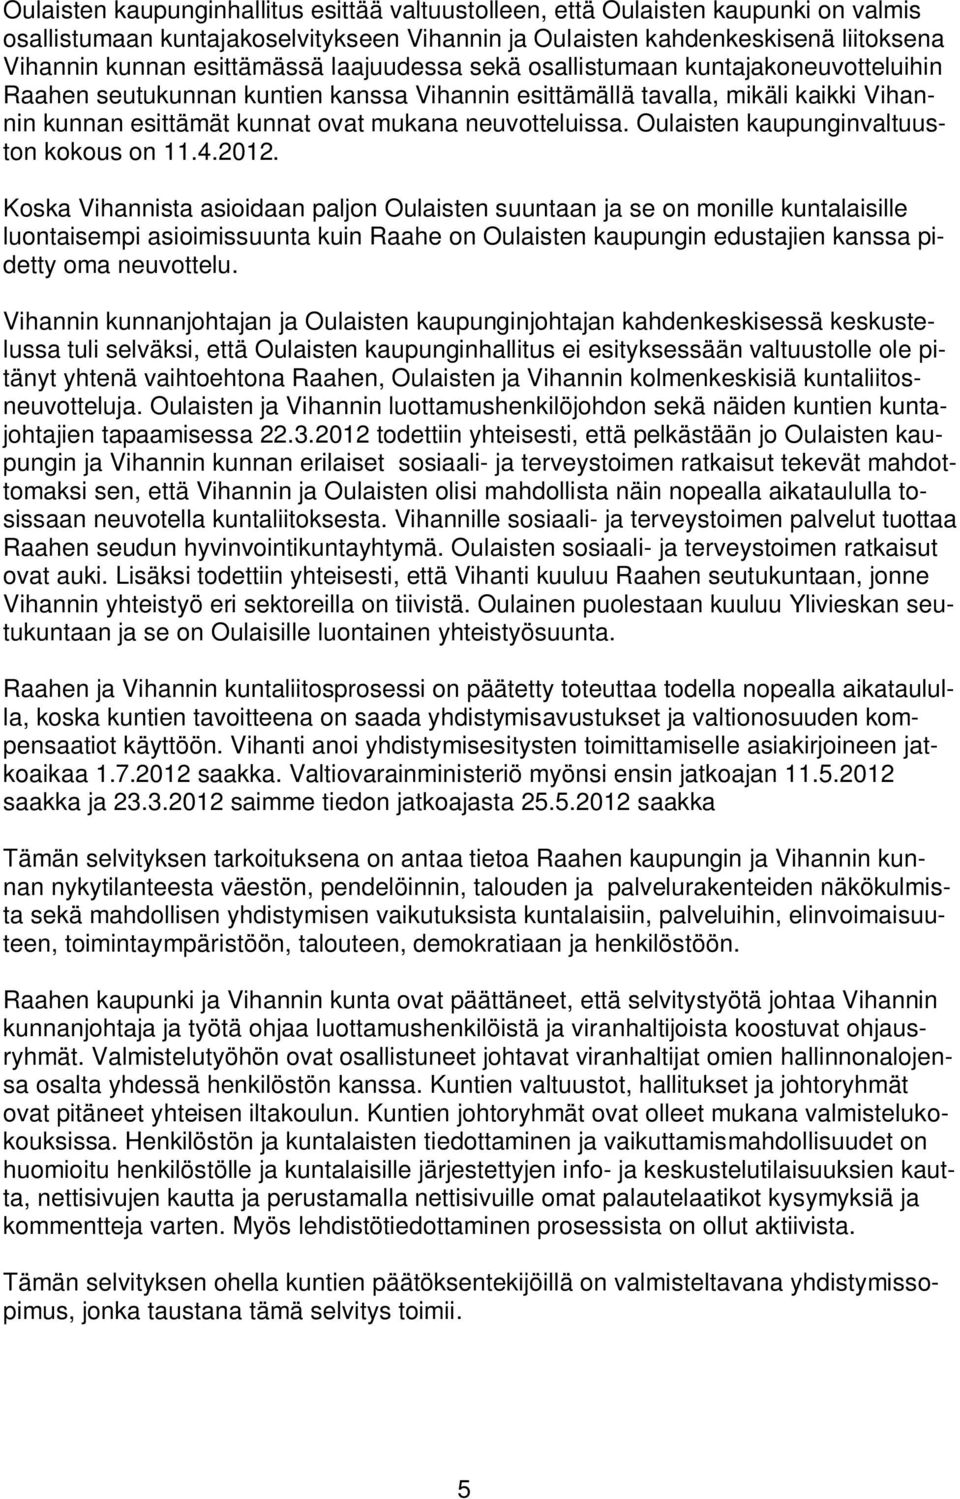 Oulaisten kaupunginvaltuuston kokous on 11.4.2012.